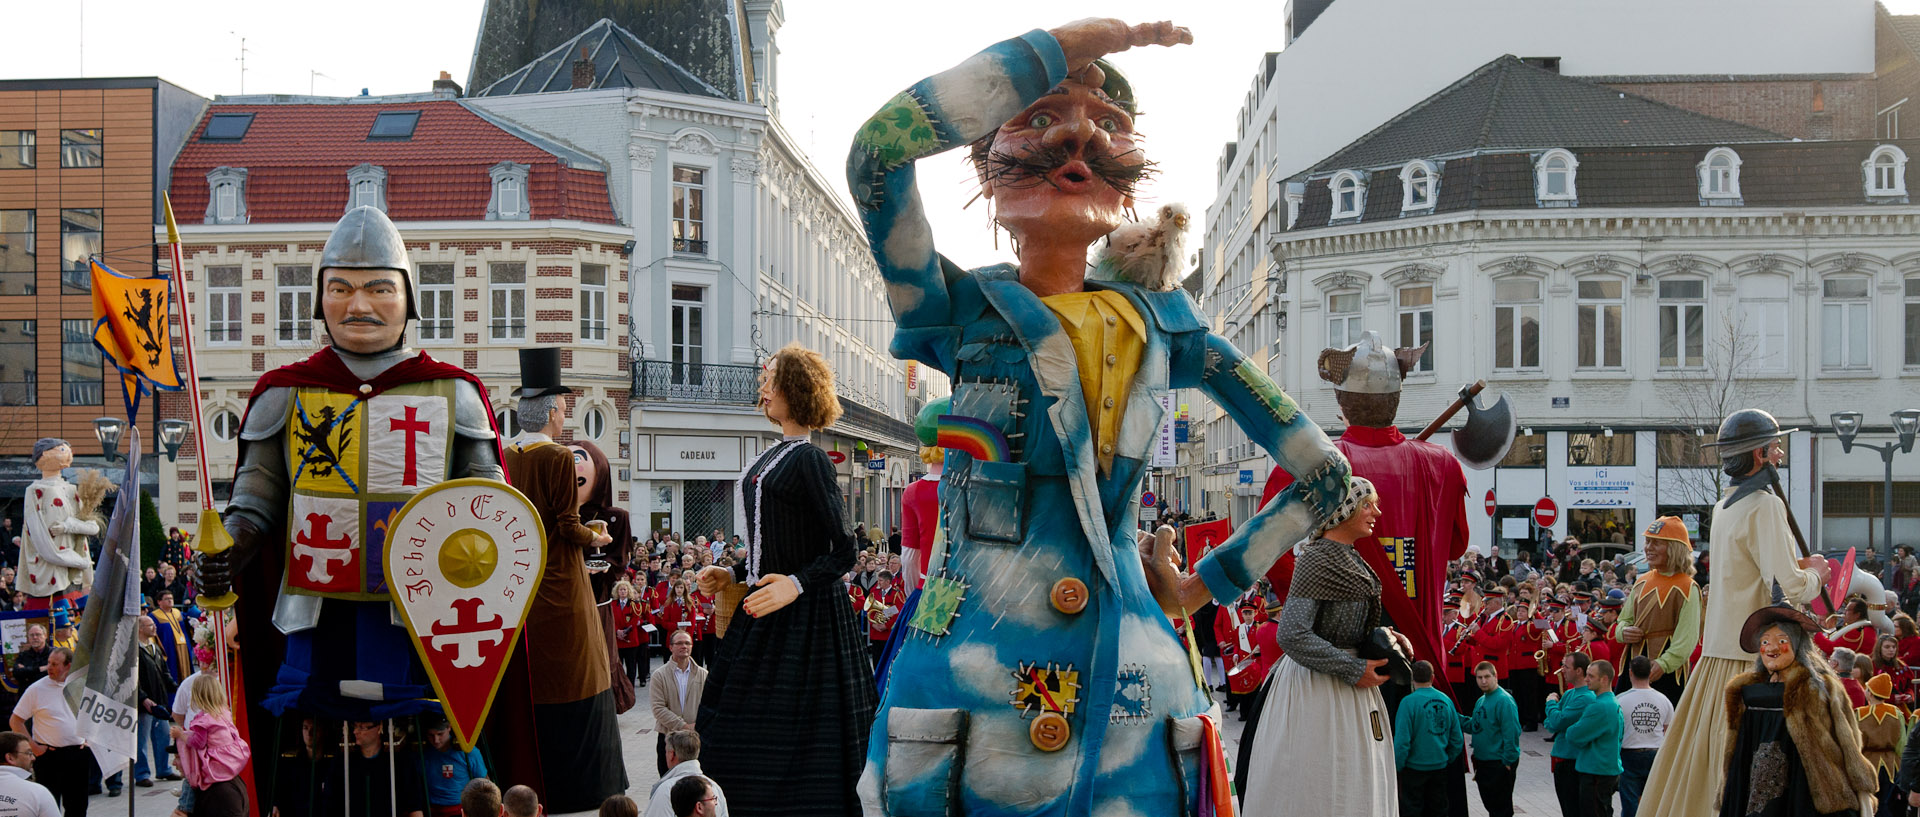 La danse des géants, au carnaval de Tourcoing, place Victor Hassebroucq.